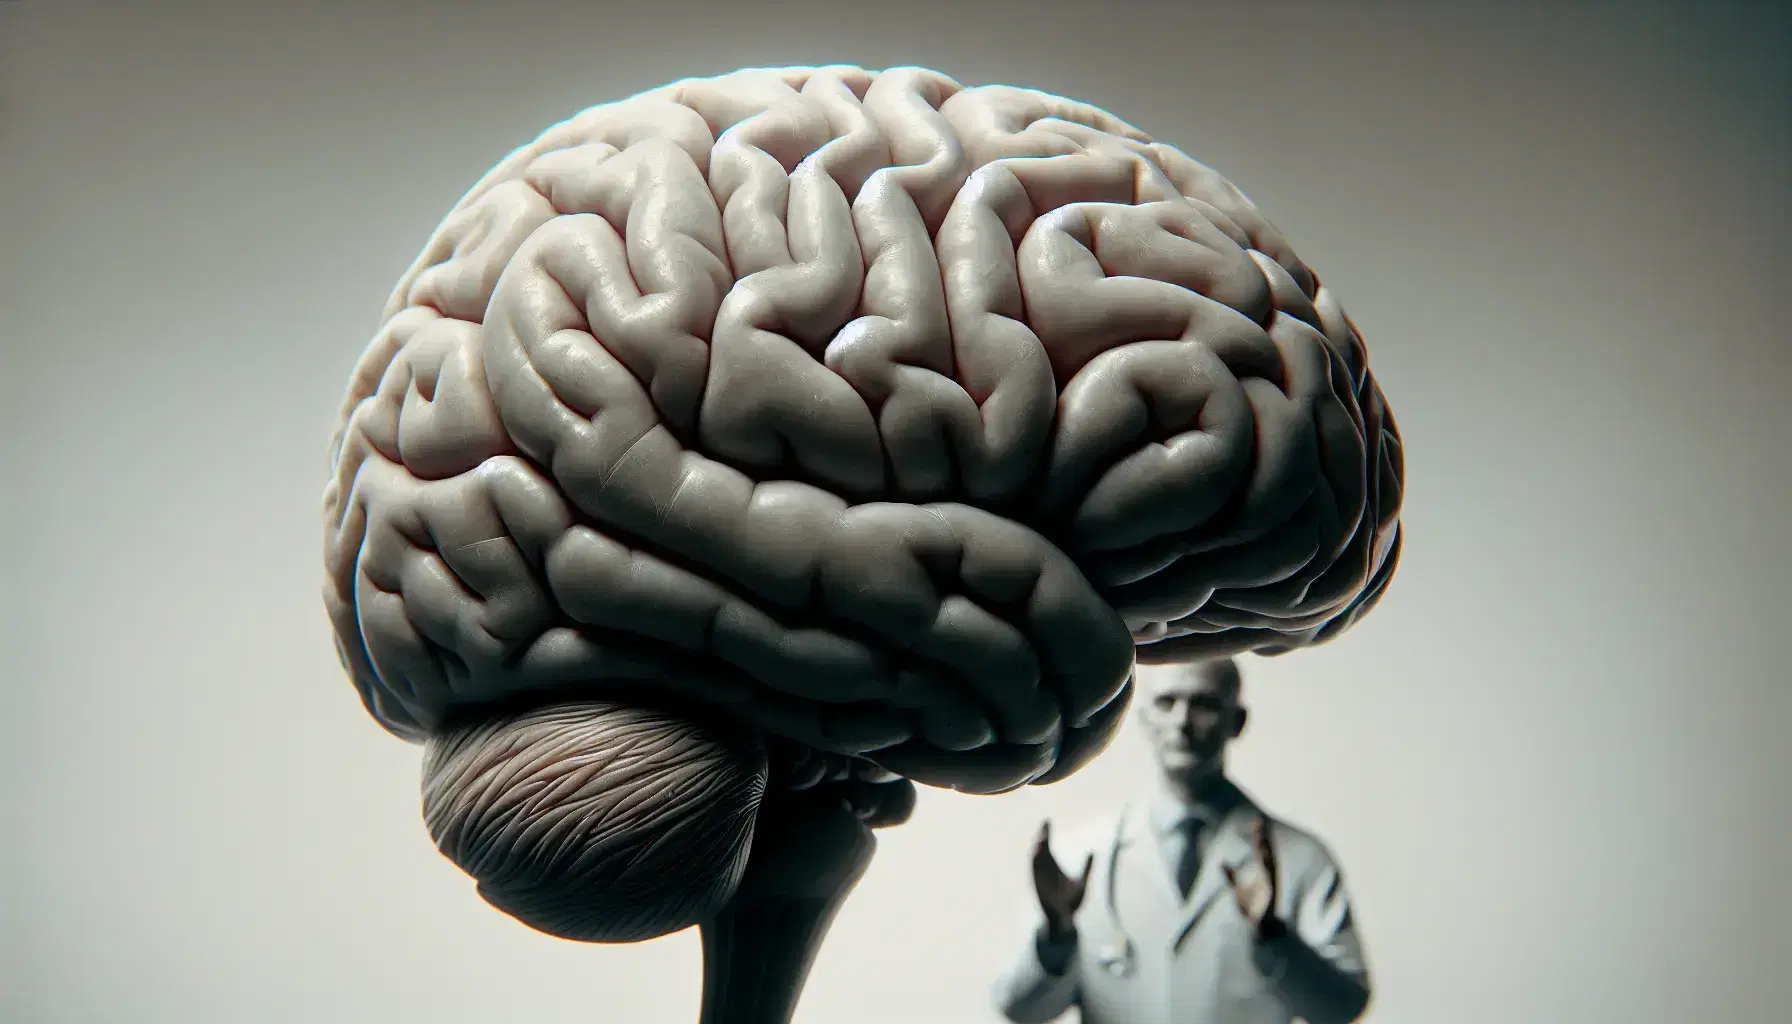 Cerebro humano en tonos grises con hemisferio izquierdo destacado y figura borrosa de profesional en fondo, iluminación suave resaltando surcos cerebrales.